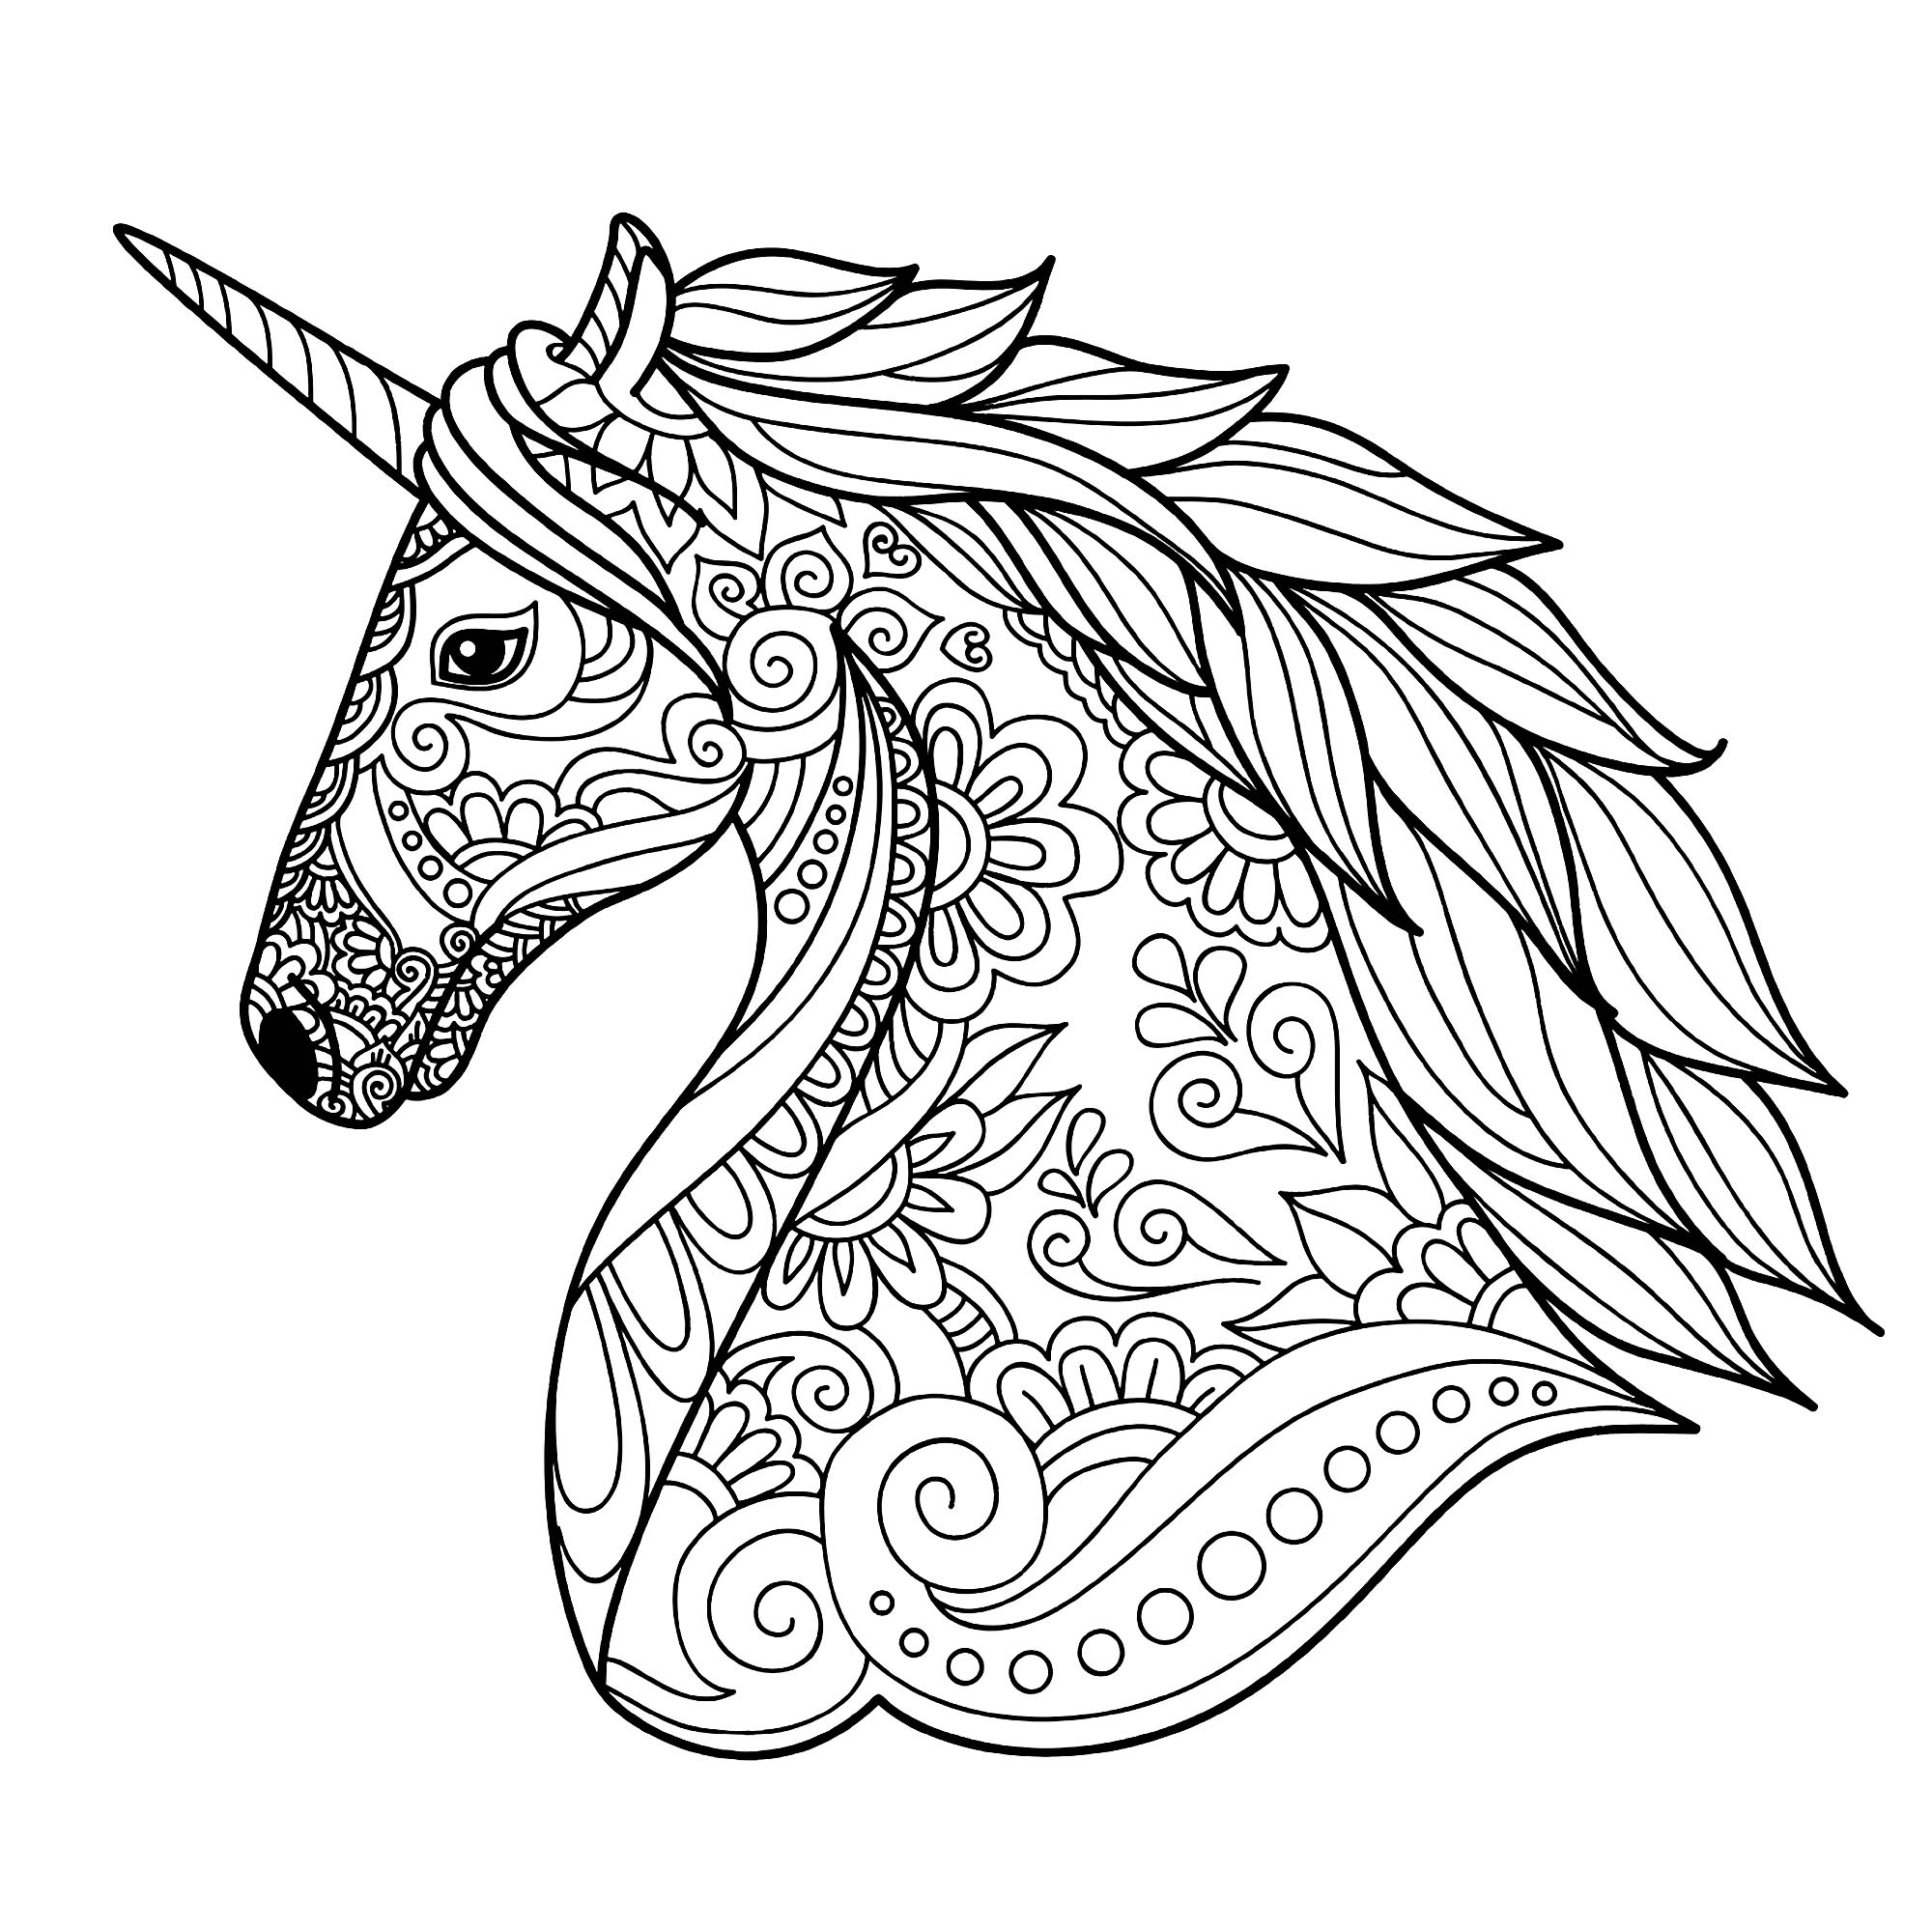 Disegni da colorare per adulti Unicorni 2